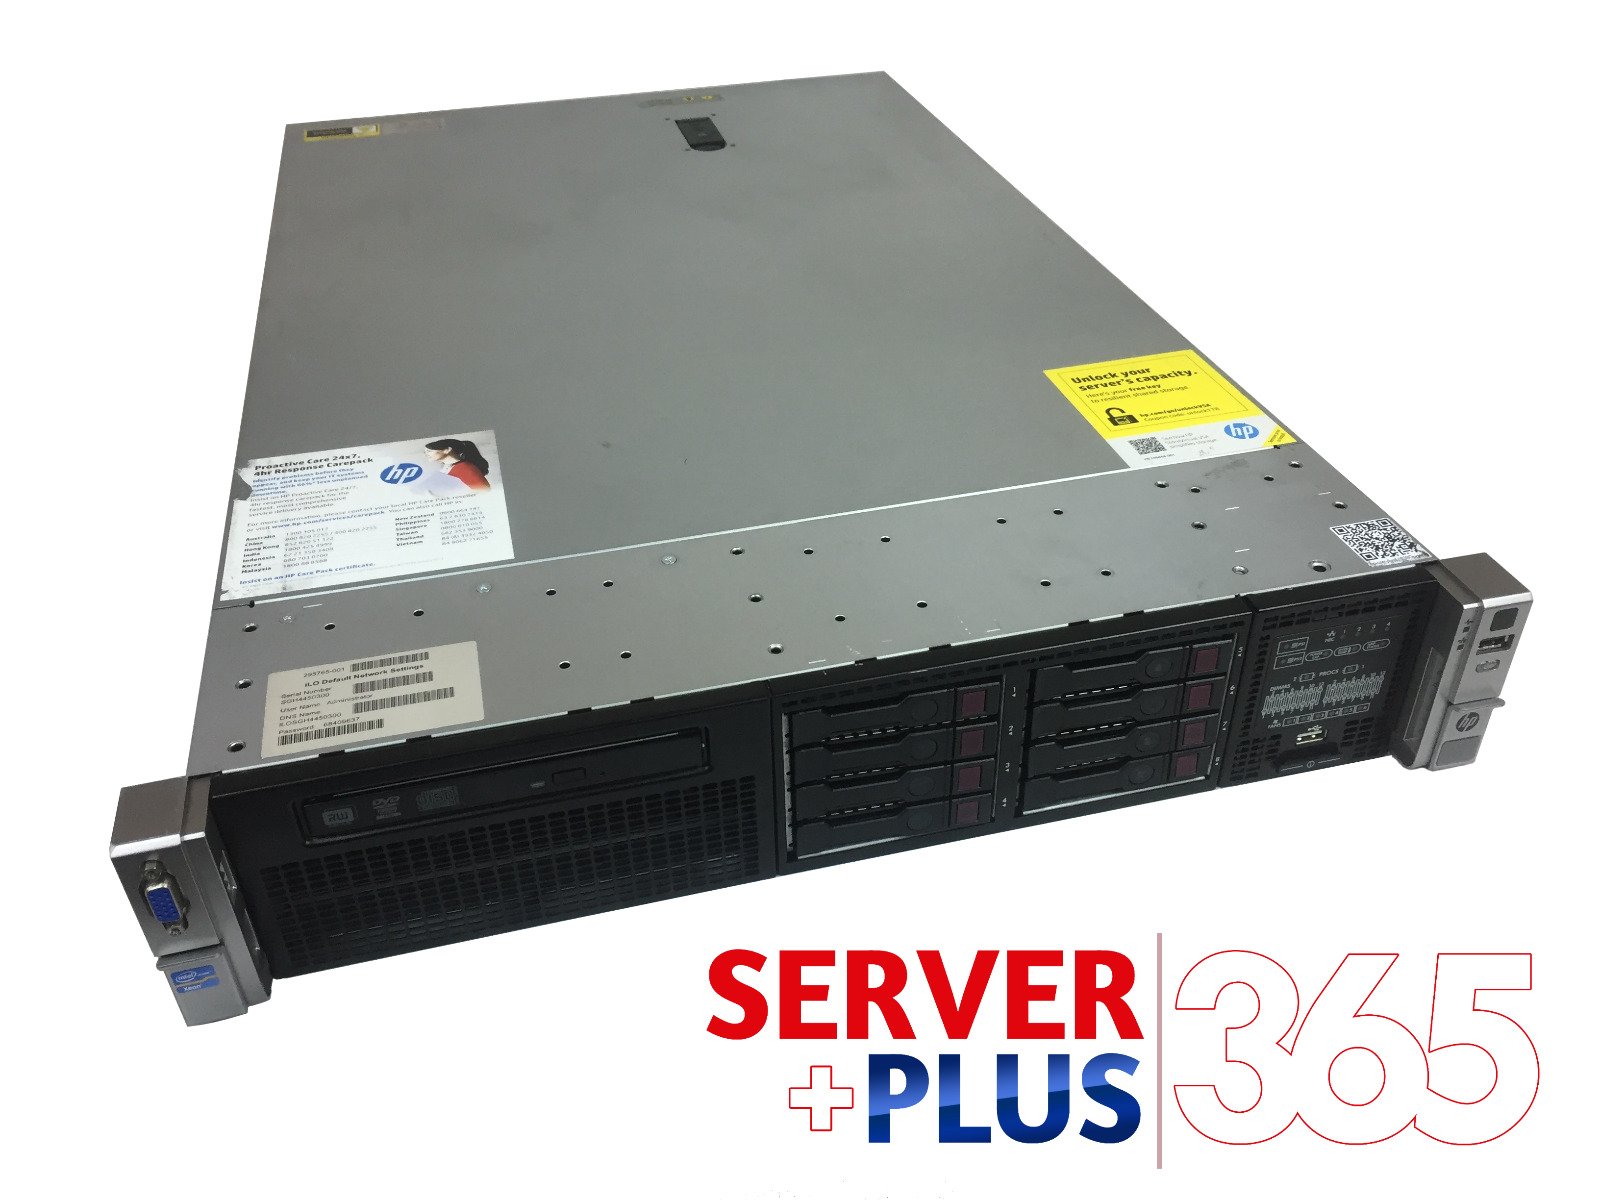 HP ProLiant DL380p G8 server, 2x 2.8 GHz 10-Core, 128GB RAM, 8x 600GB 10K SAS